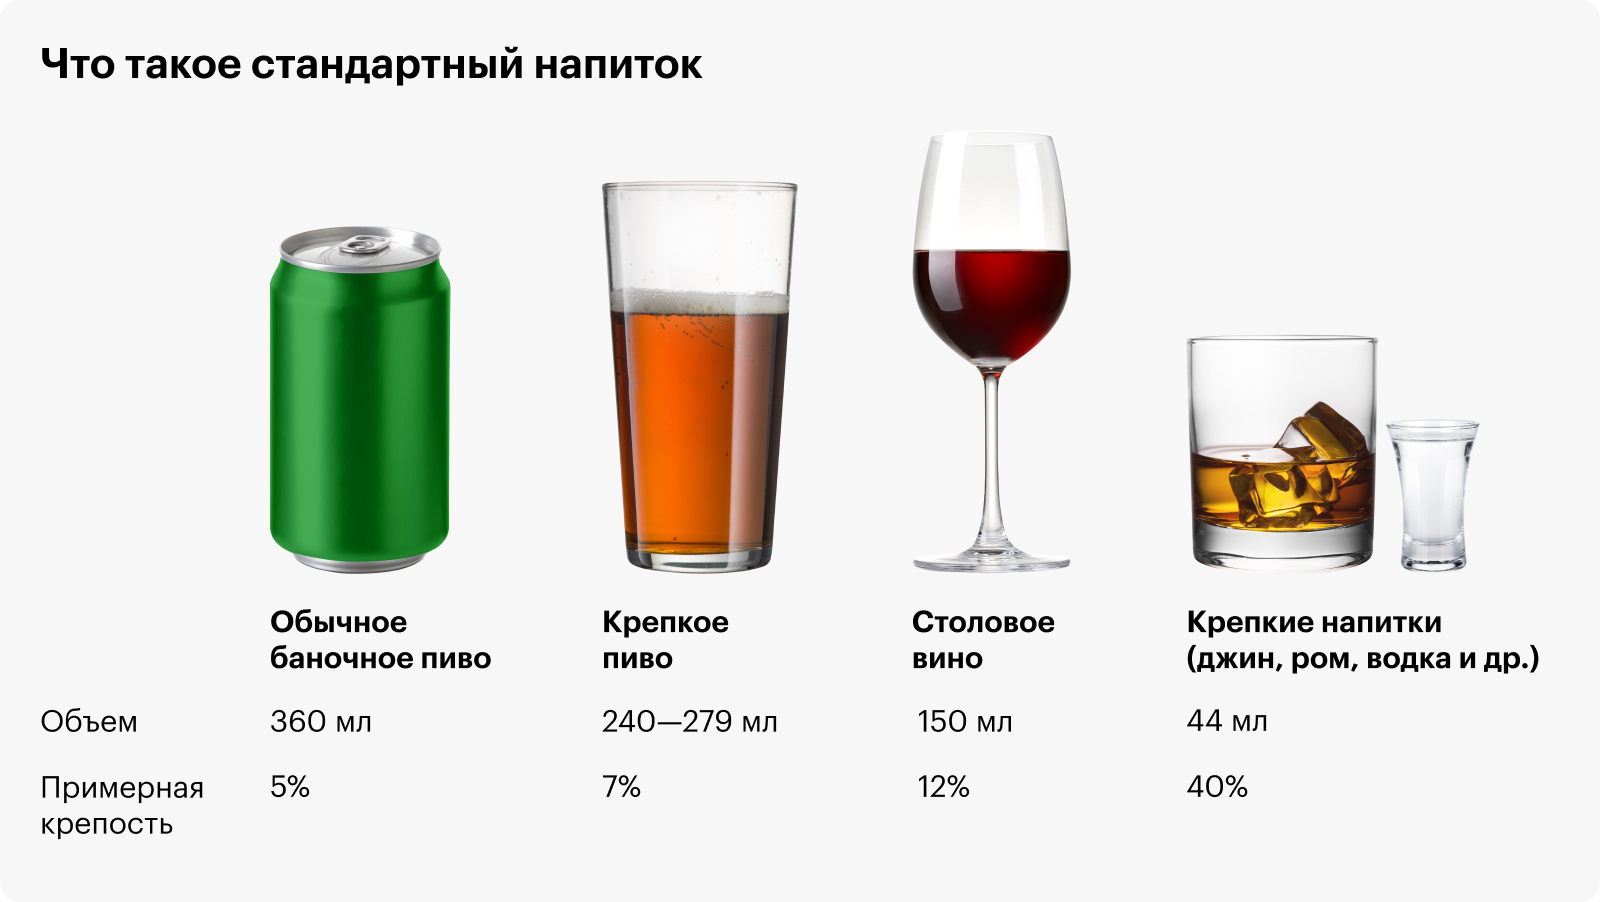 Каждый напиток, изображенный выше, — одна стандартная доза. Процент чистого спирта, то есть крепость, варьируется в разных напитках. Хотя этот стандарт удобен для соблюдения рекомендаций по здоровью, он может не отражать обычные размеры порций. Источник: niaaa.nih.gov